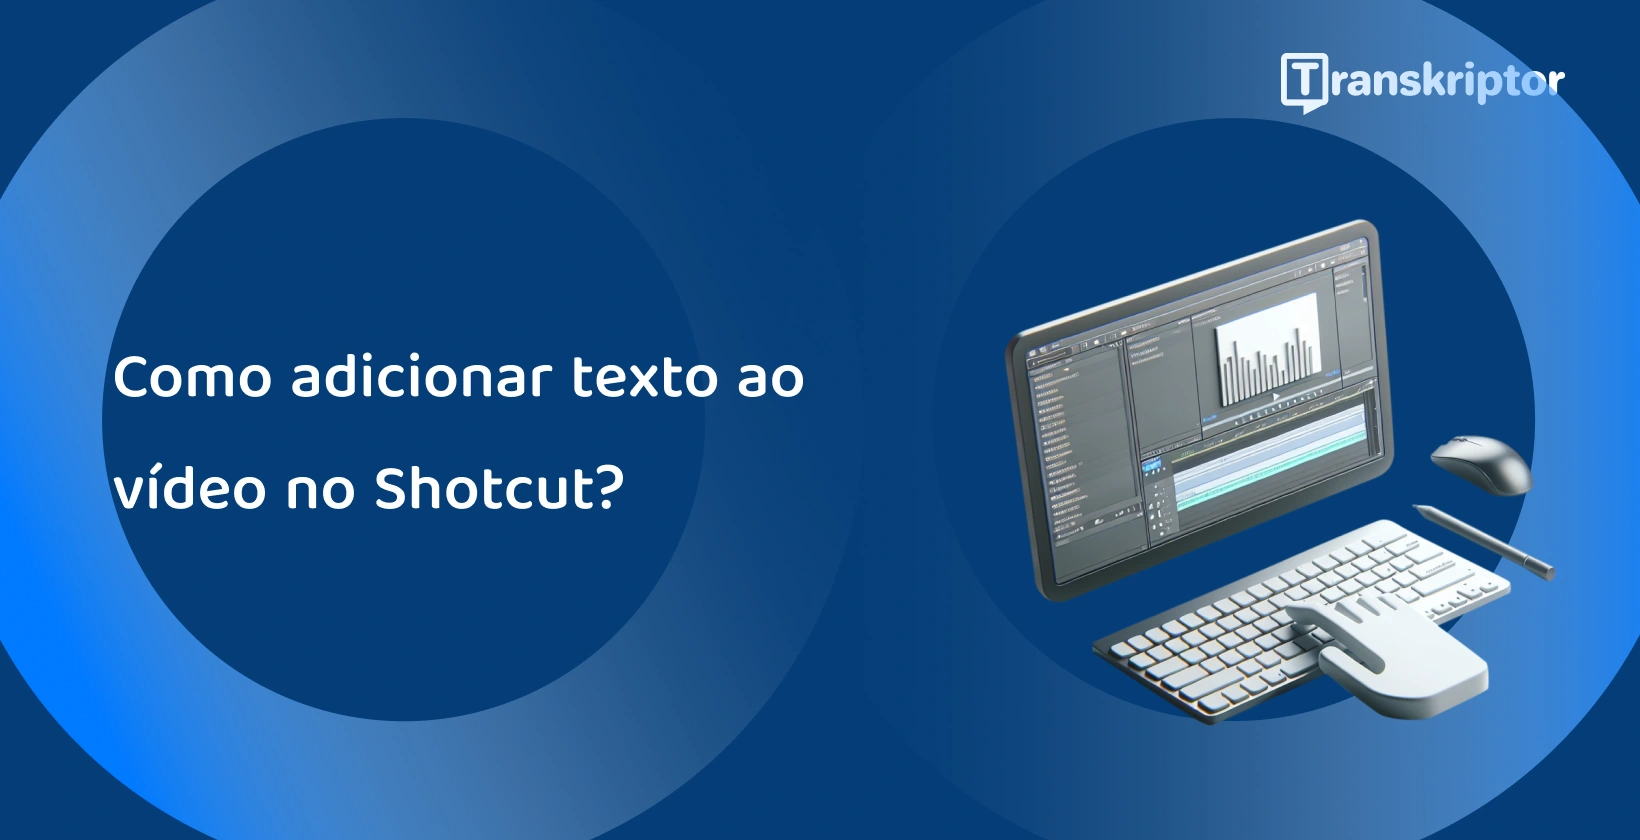 Shotcut software de edição de vídeo em um monitor com ferramentas de forma de onda e texto, para adicionar legendas e títulos aos vídeos.